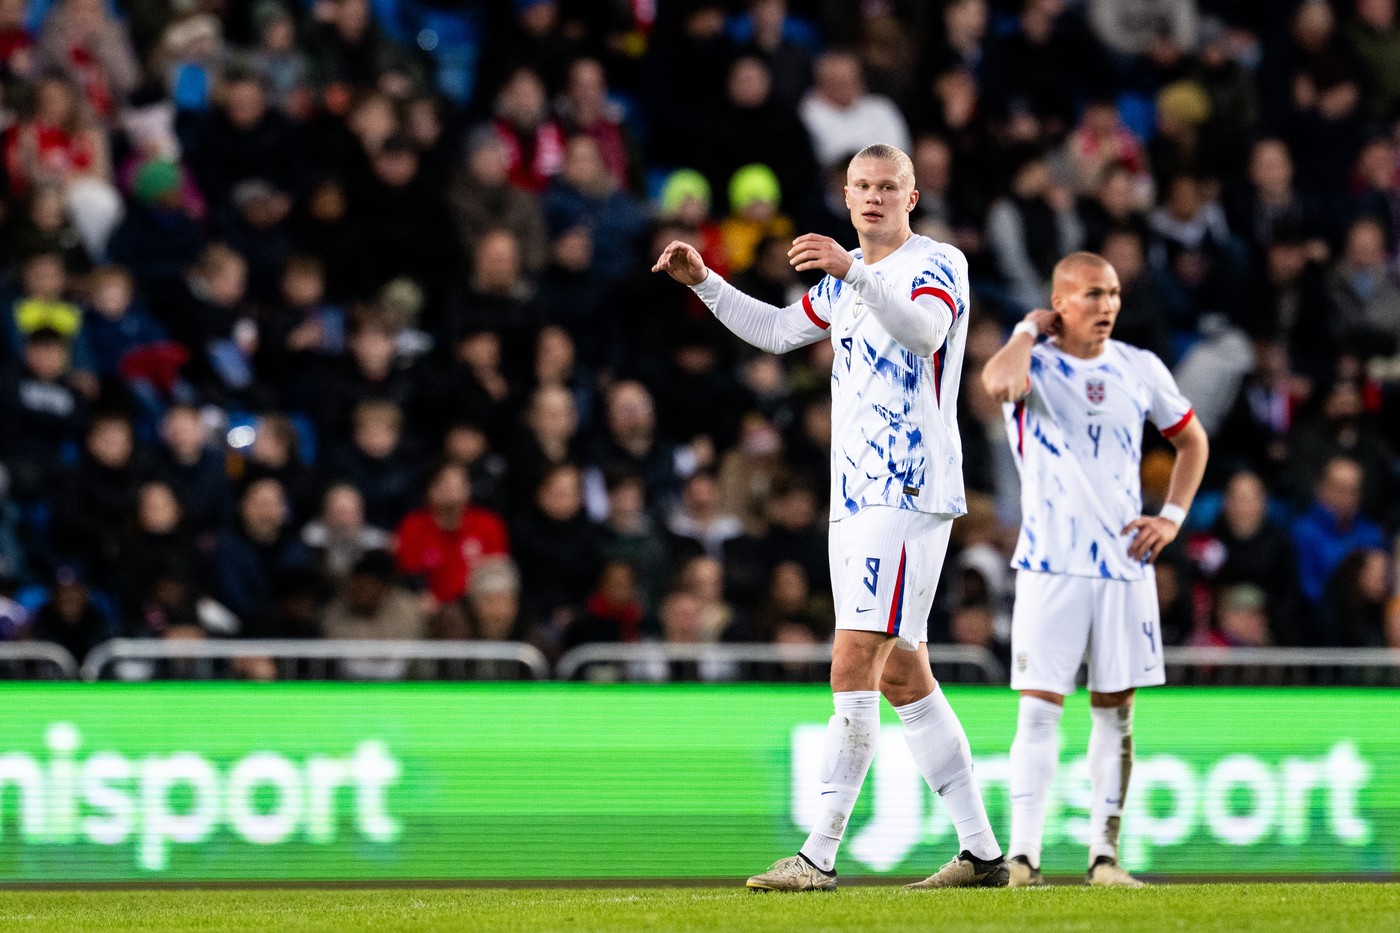 Norvegia - Cehia 1-2. Naționala lui Erling Haaland, învinsă cu un gol superb marcat în ultimele minute